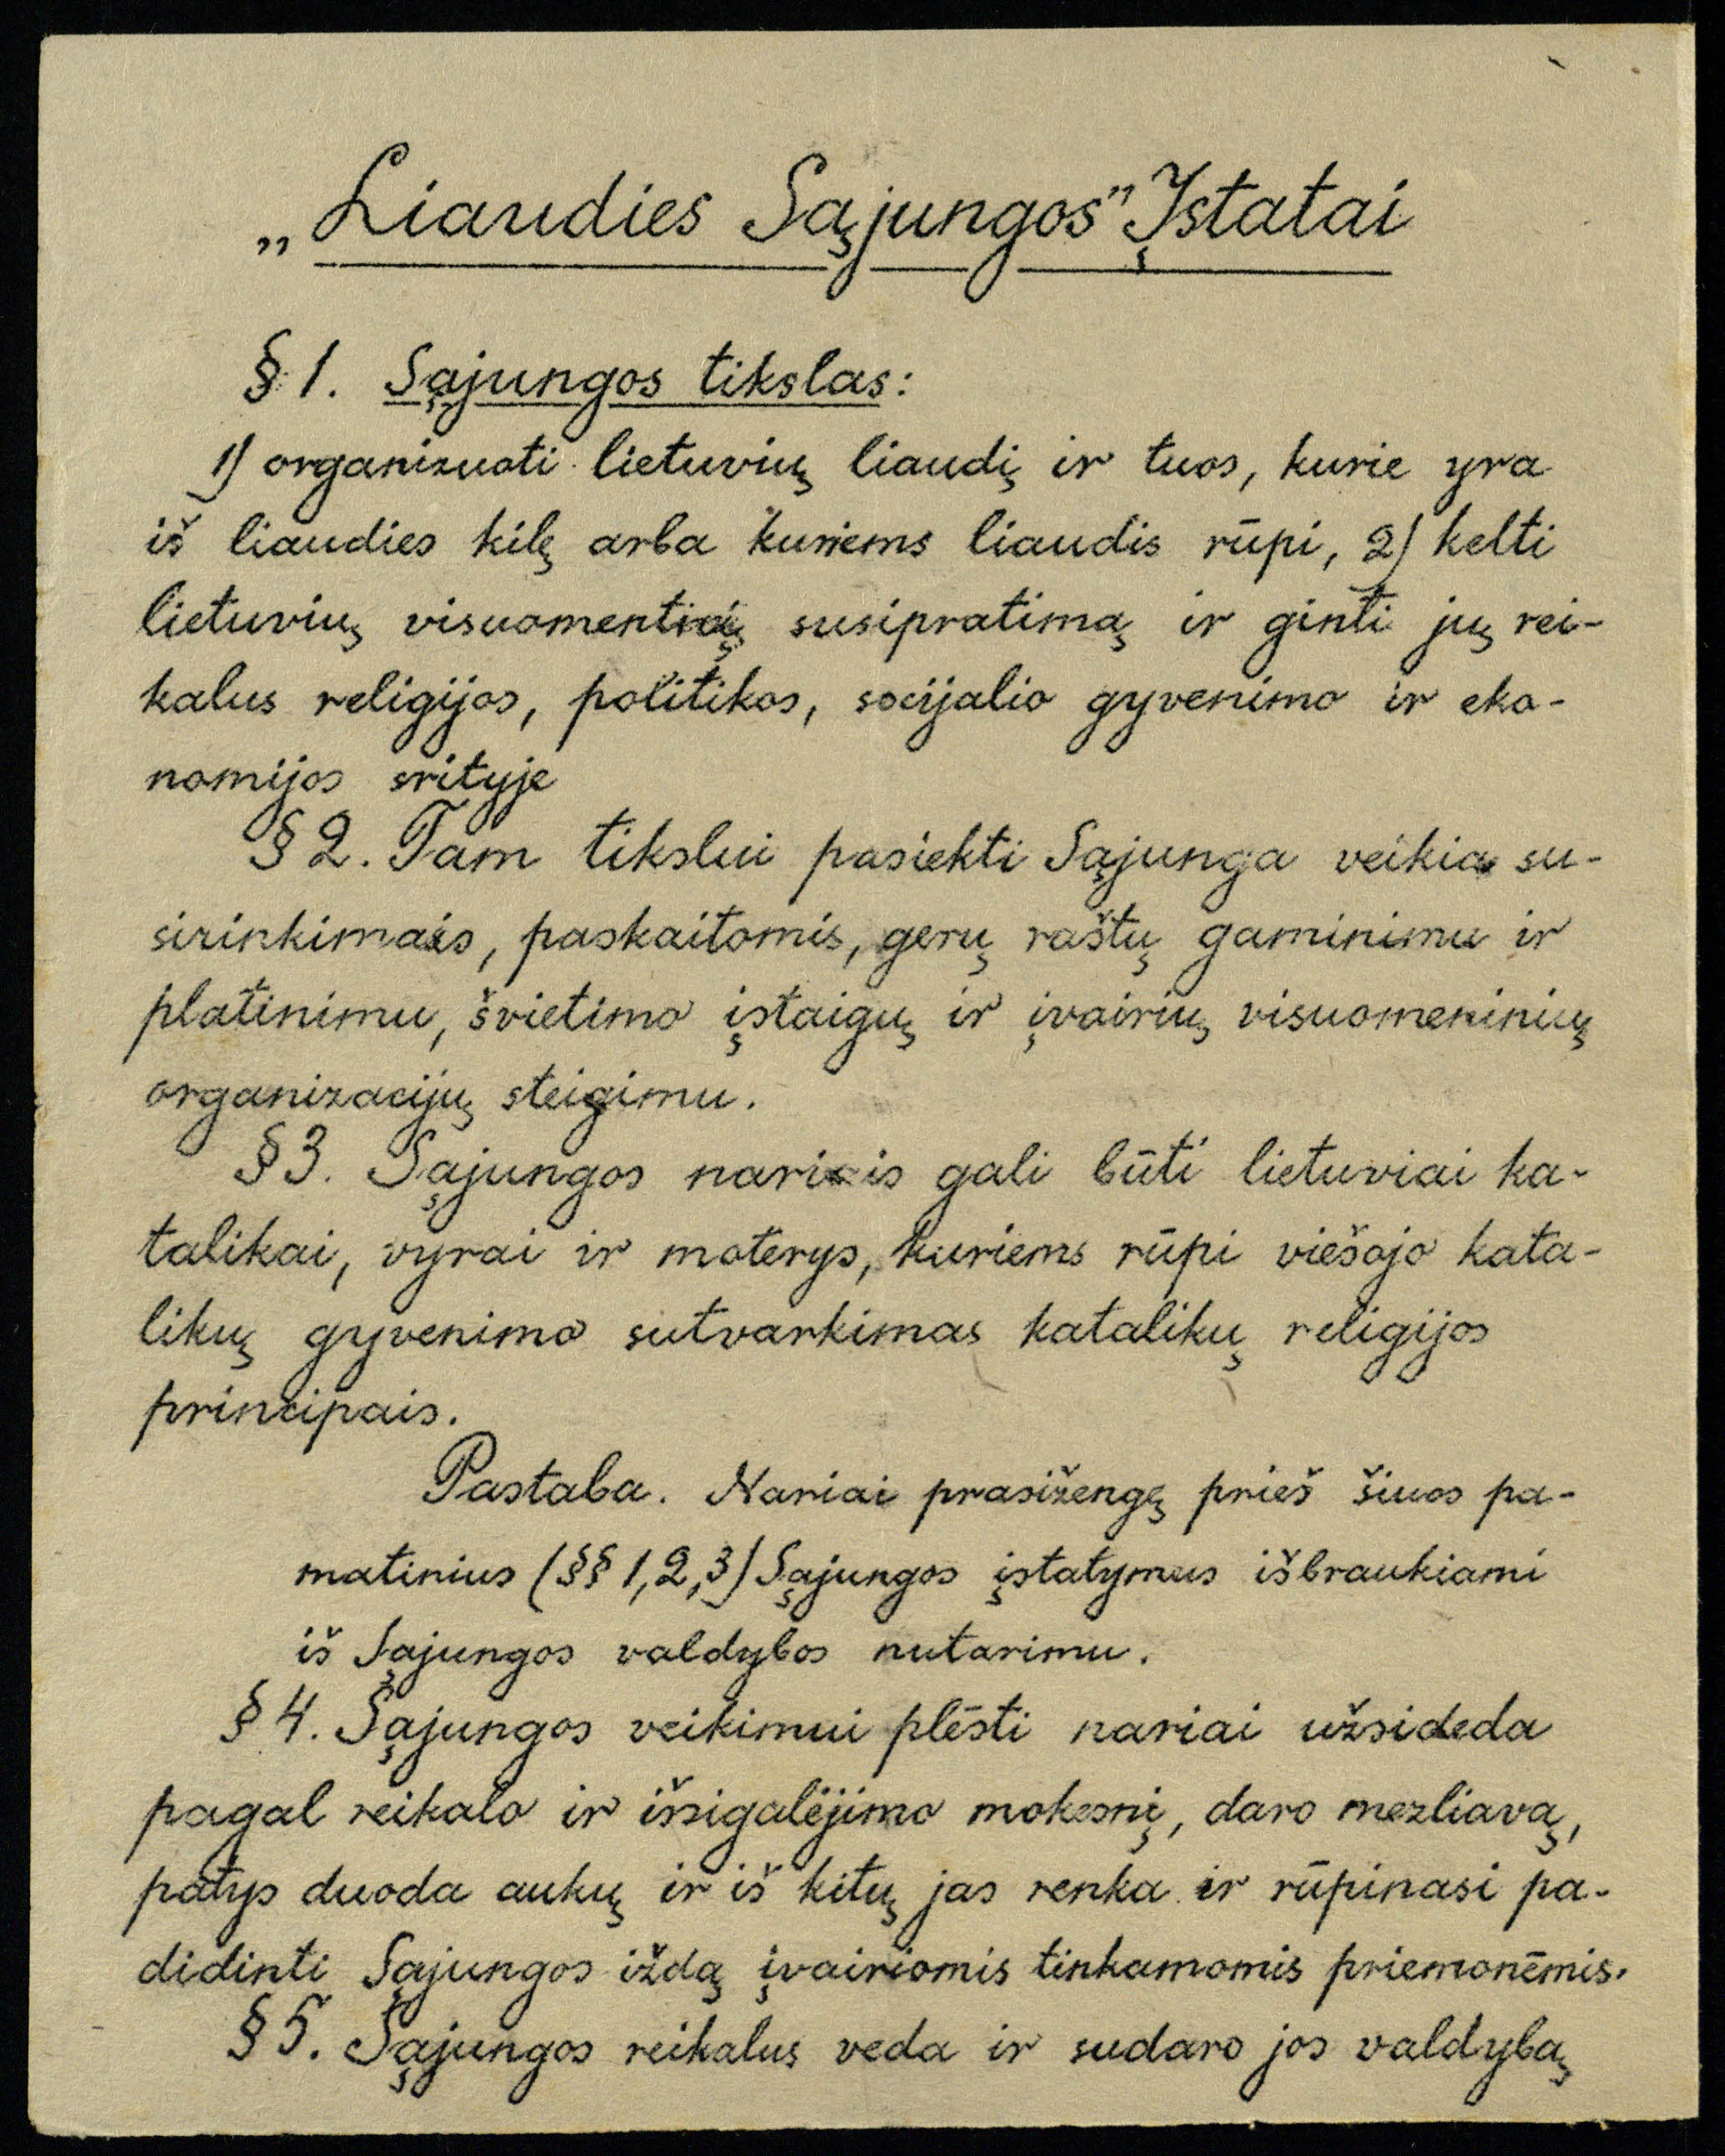 Liaudies sąjungos įstatai. 1917 03 12. LMAVB RS, F238-46, lap. 1v.